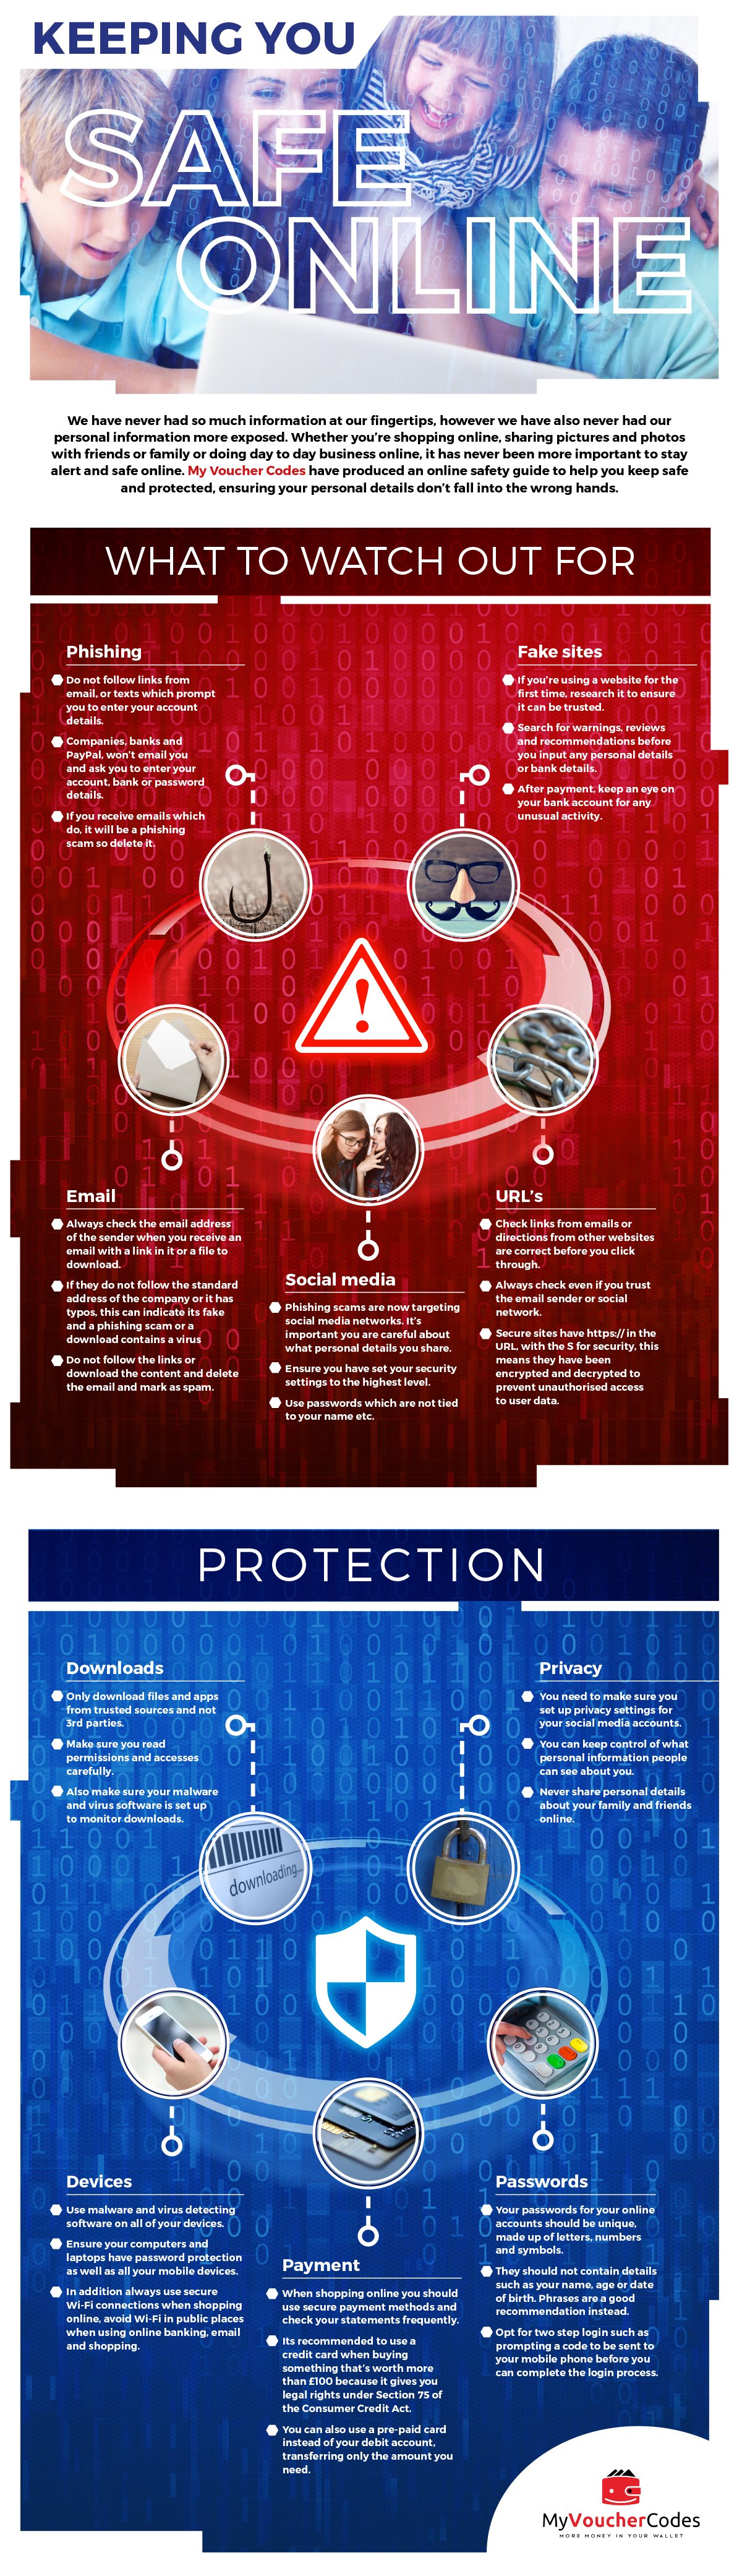 My Voucher Codes Internet Safety Infographic